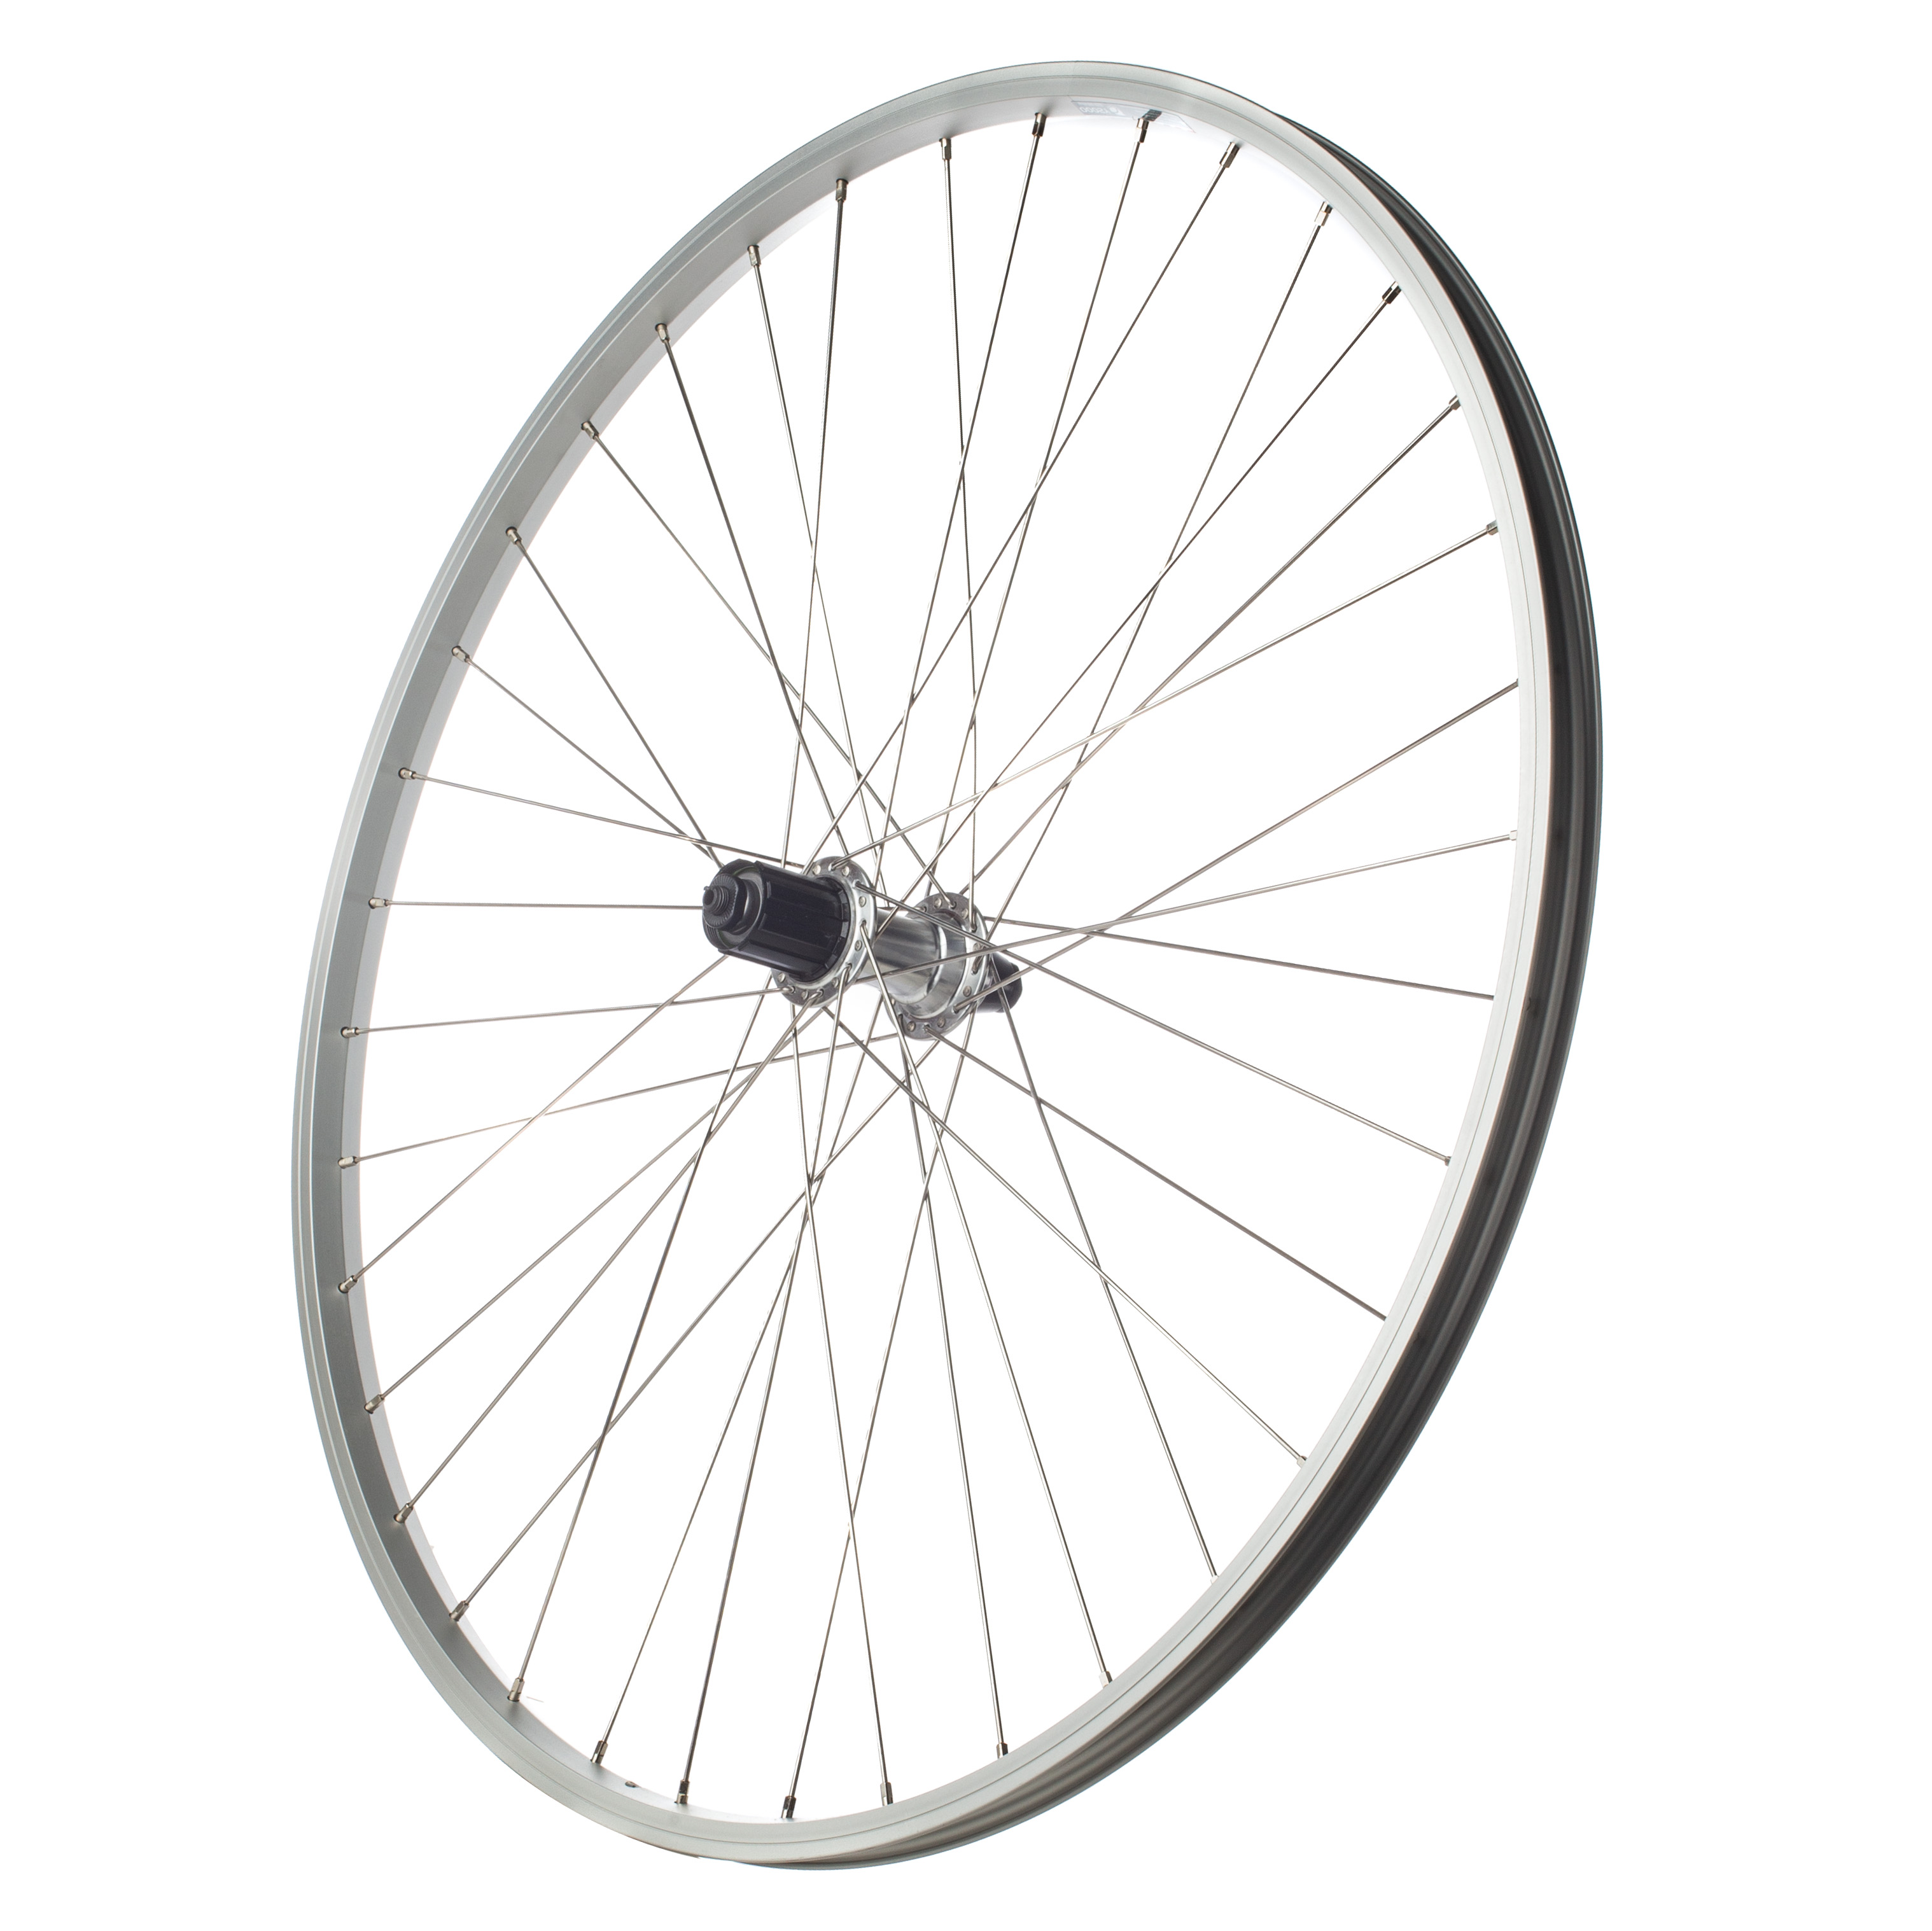 Q/R 700c REAR NARROW HYBRID Road Bike Cycle Wheel 5 SPEED FREEWHEEL 